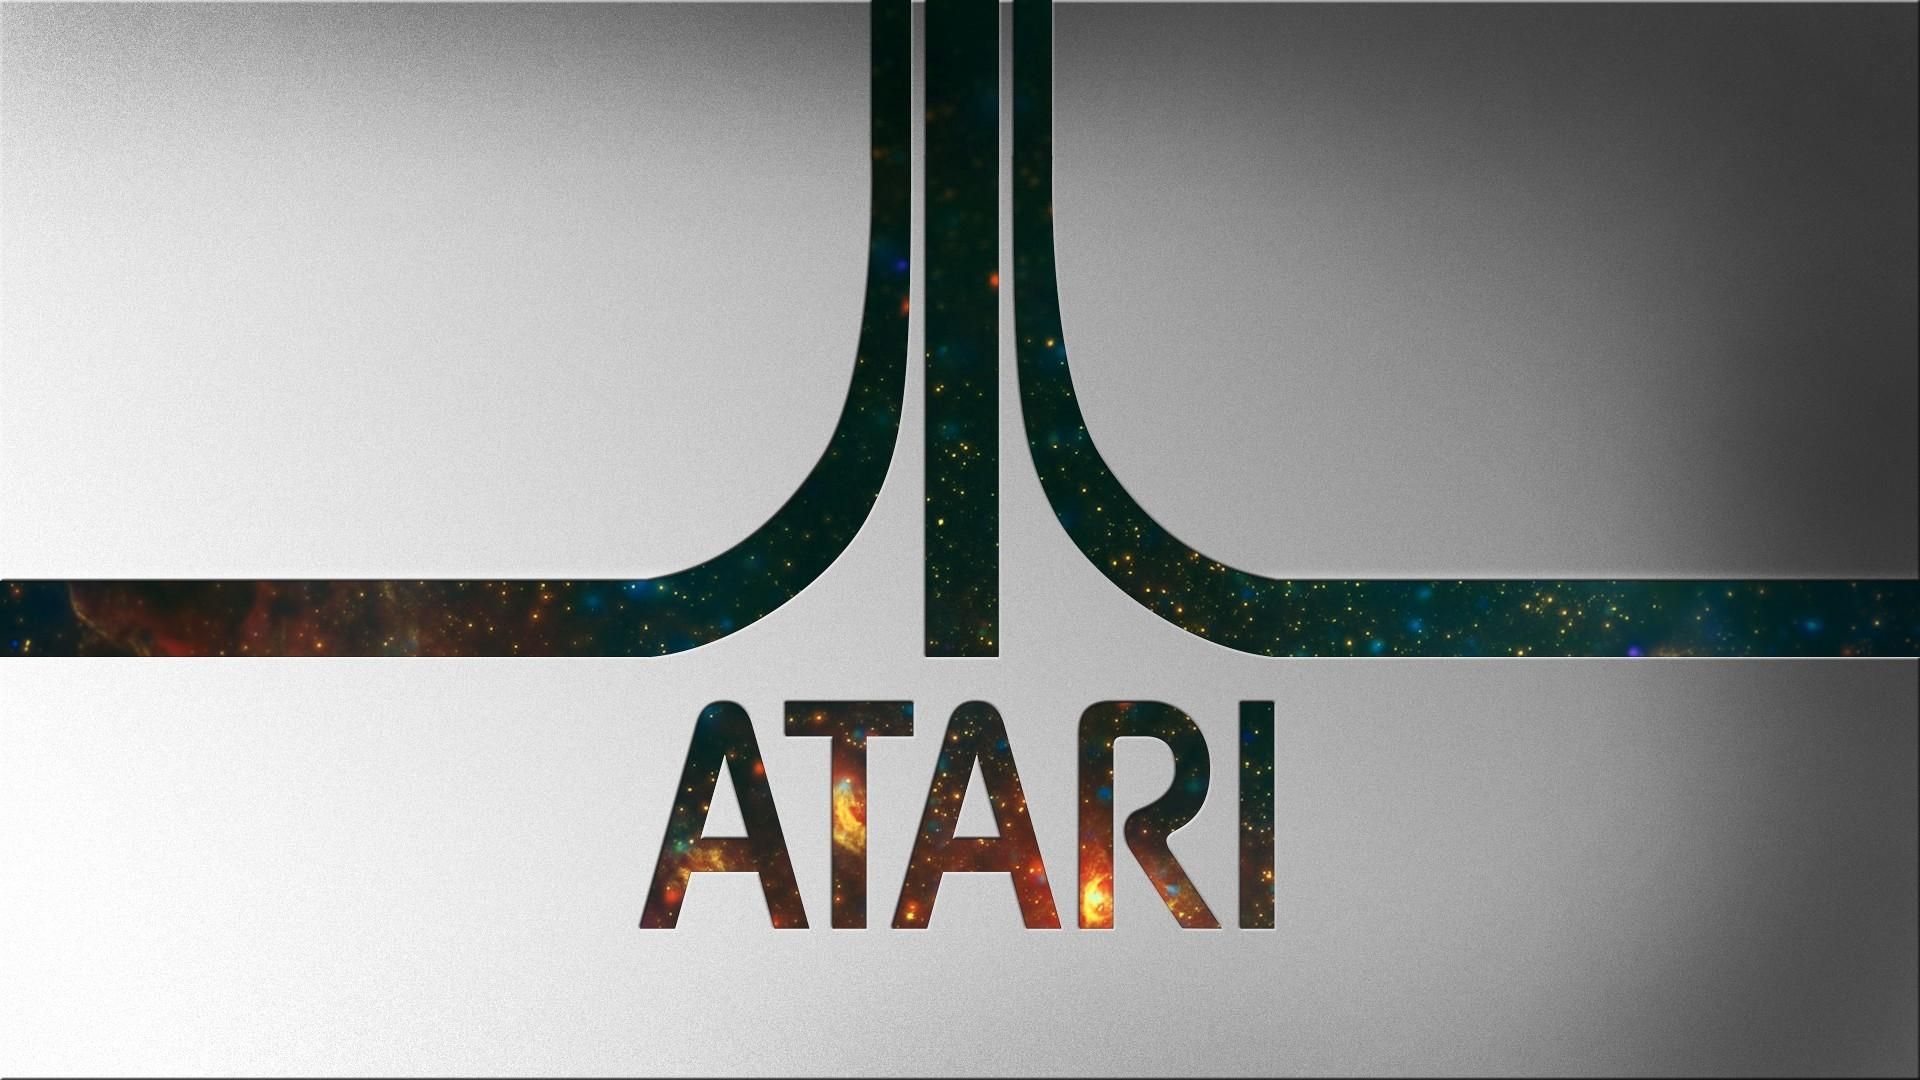 Atari Wallpapers for Desktop.